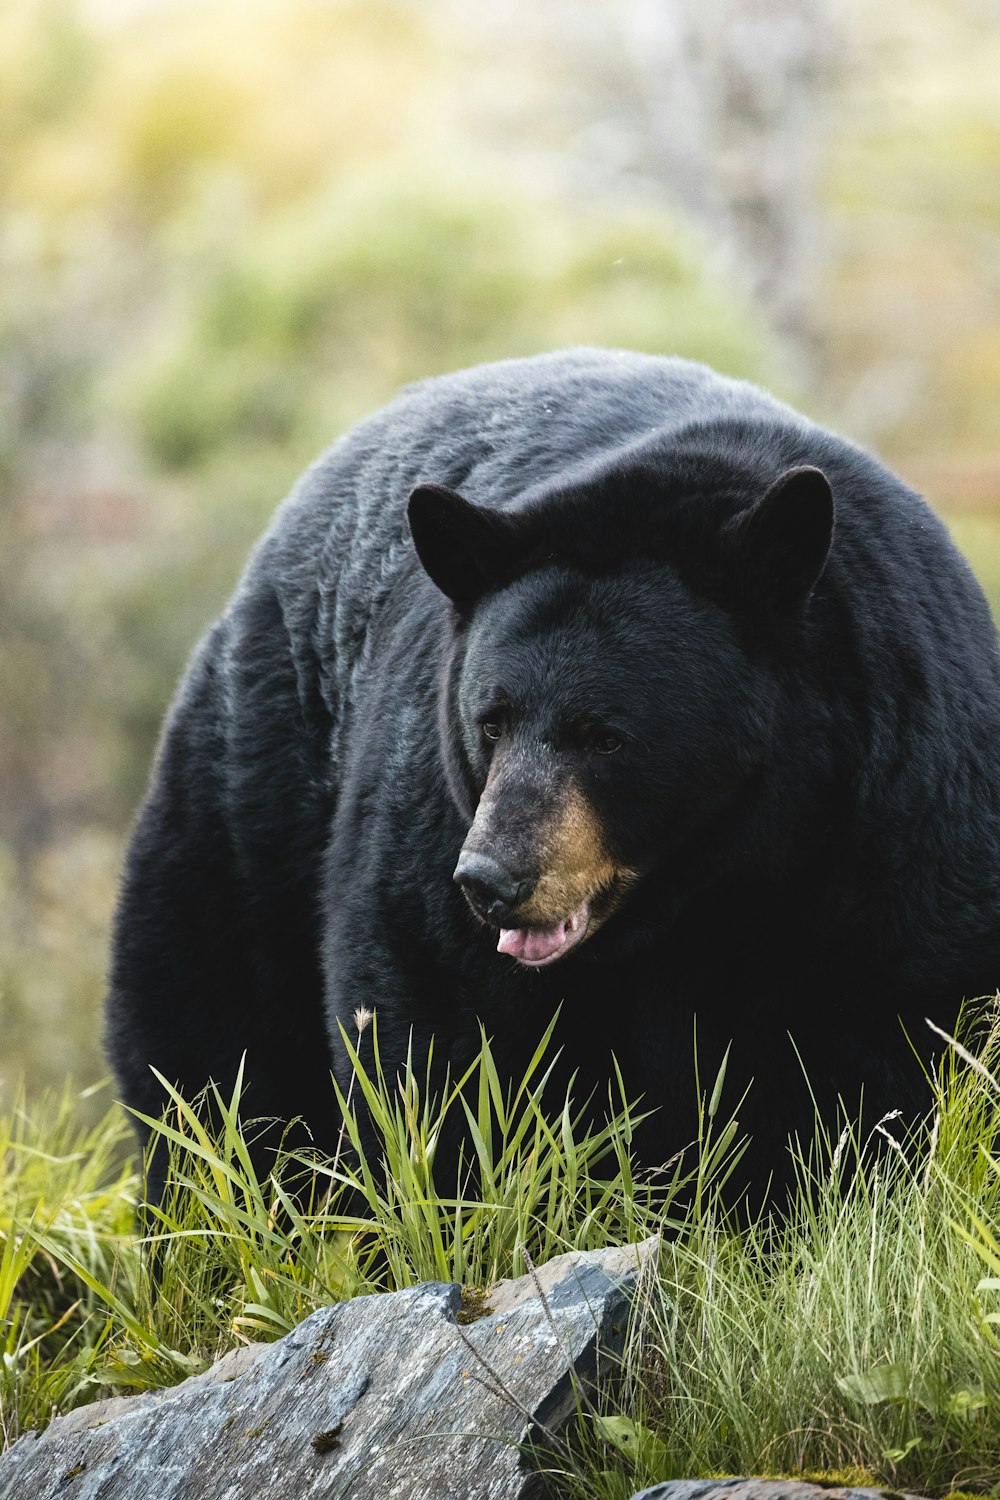 a large black bear walking across a lush green field